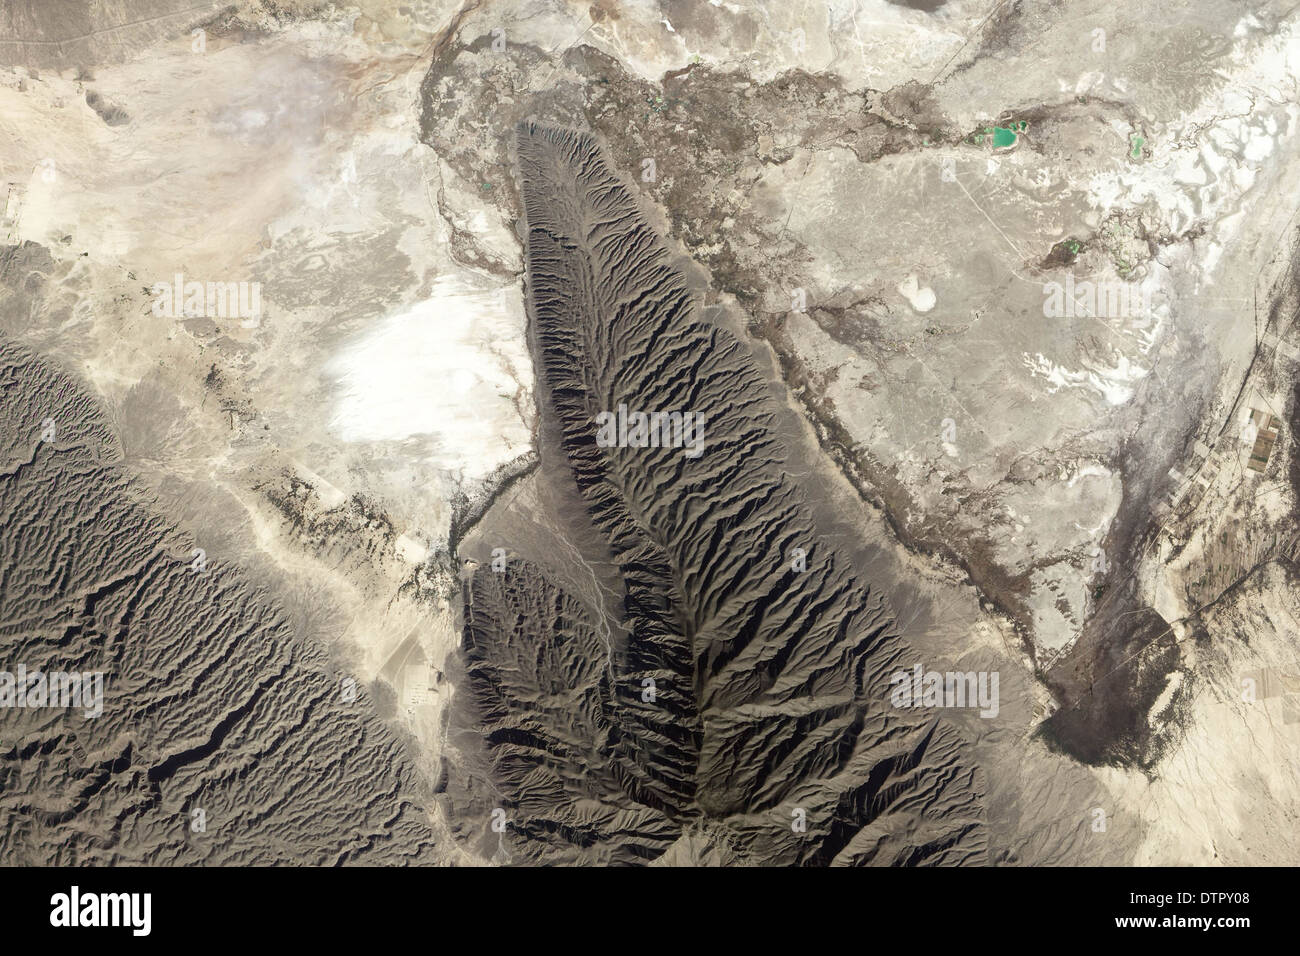 Cuatro Ciénegas Bassin, une région riche en gypse du Mexique de Chihuahua désert. Formes de gypse sulfate de calcium lorsque- et riches en eau salée e Banque D'Images